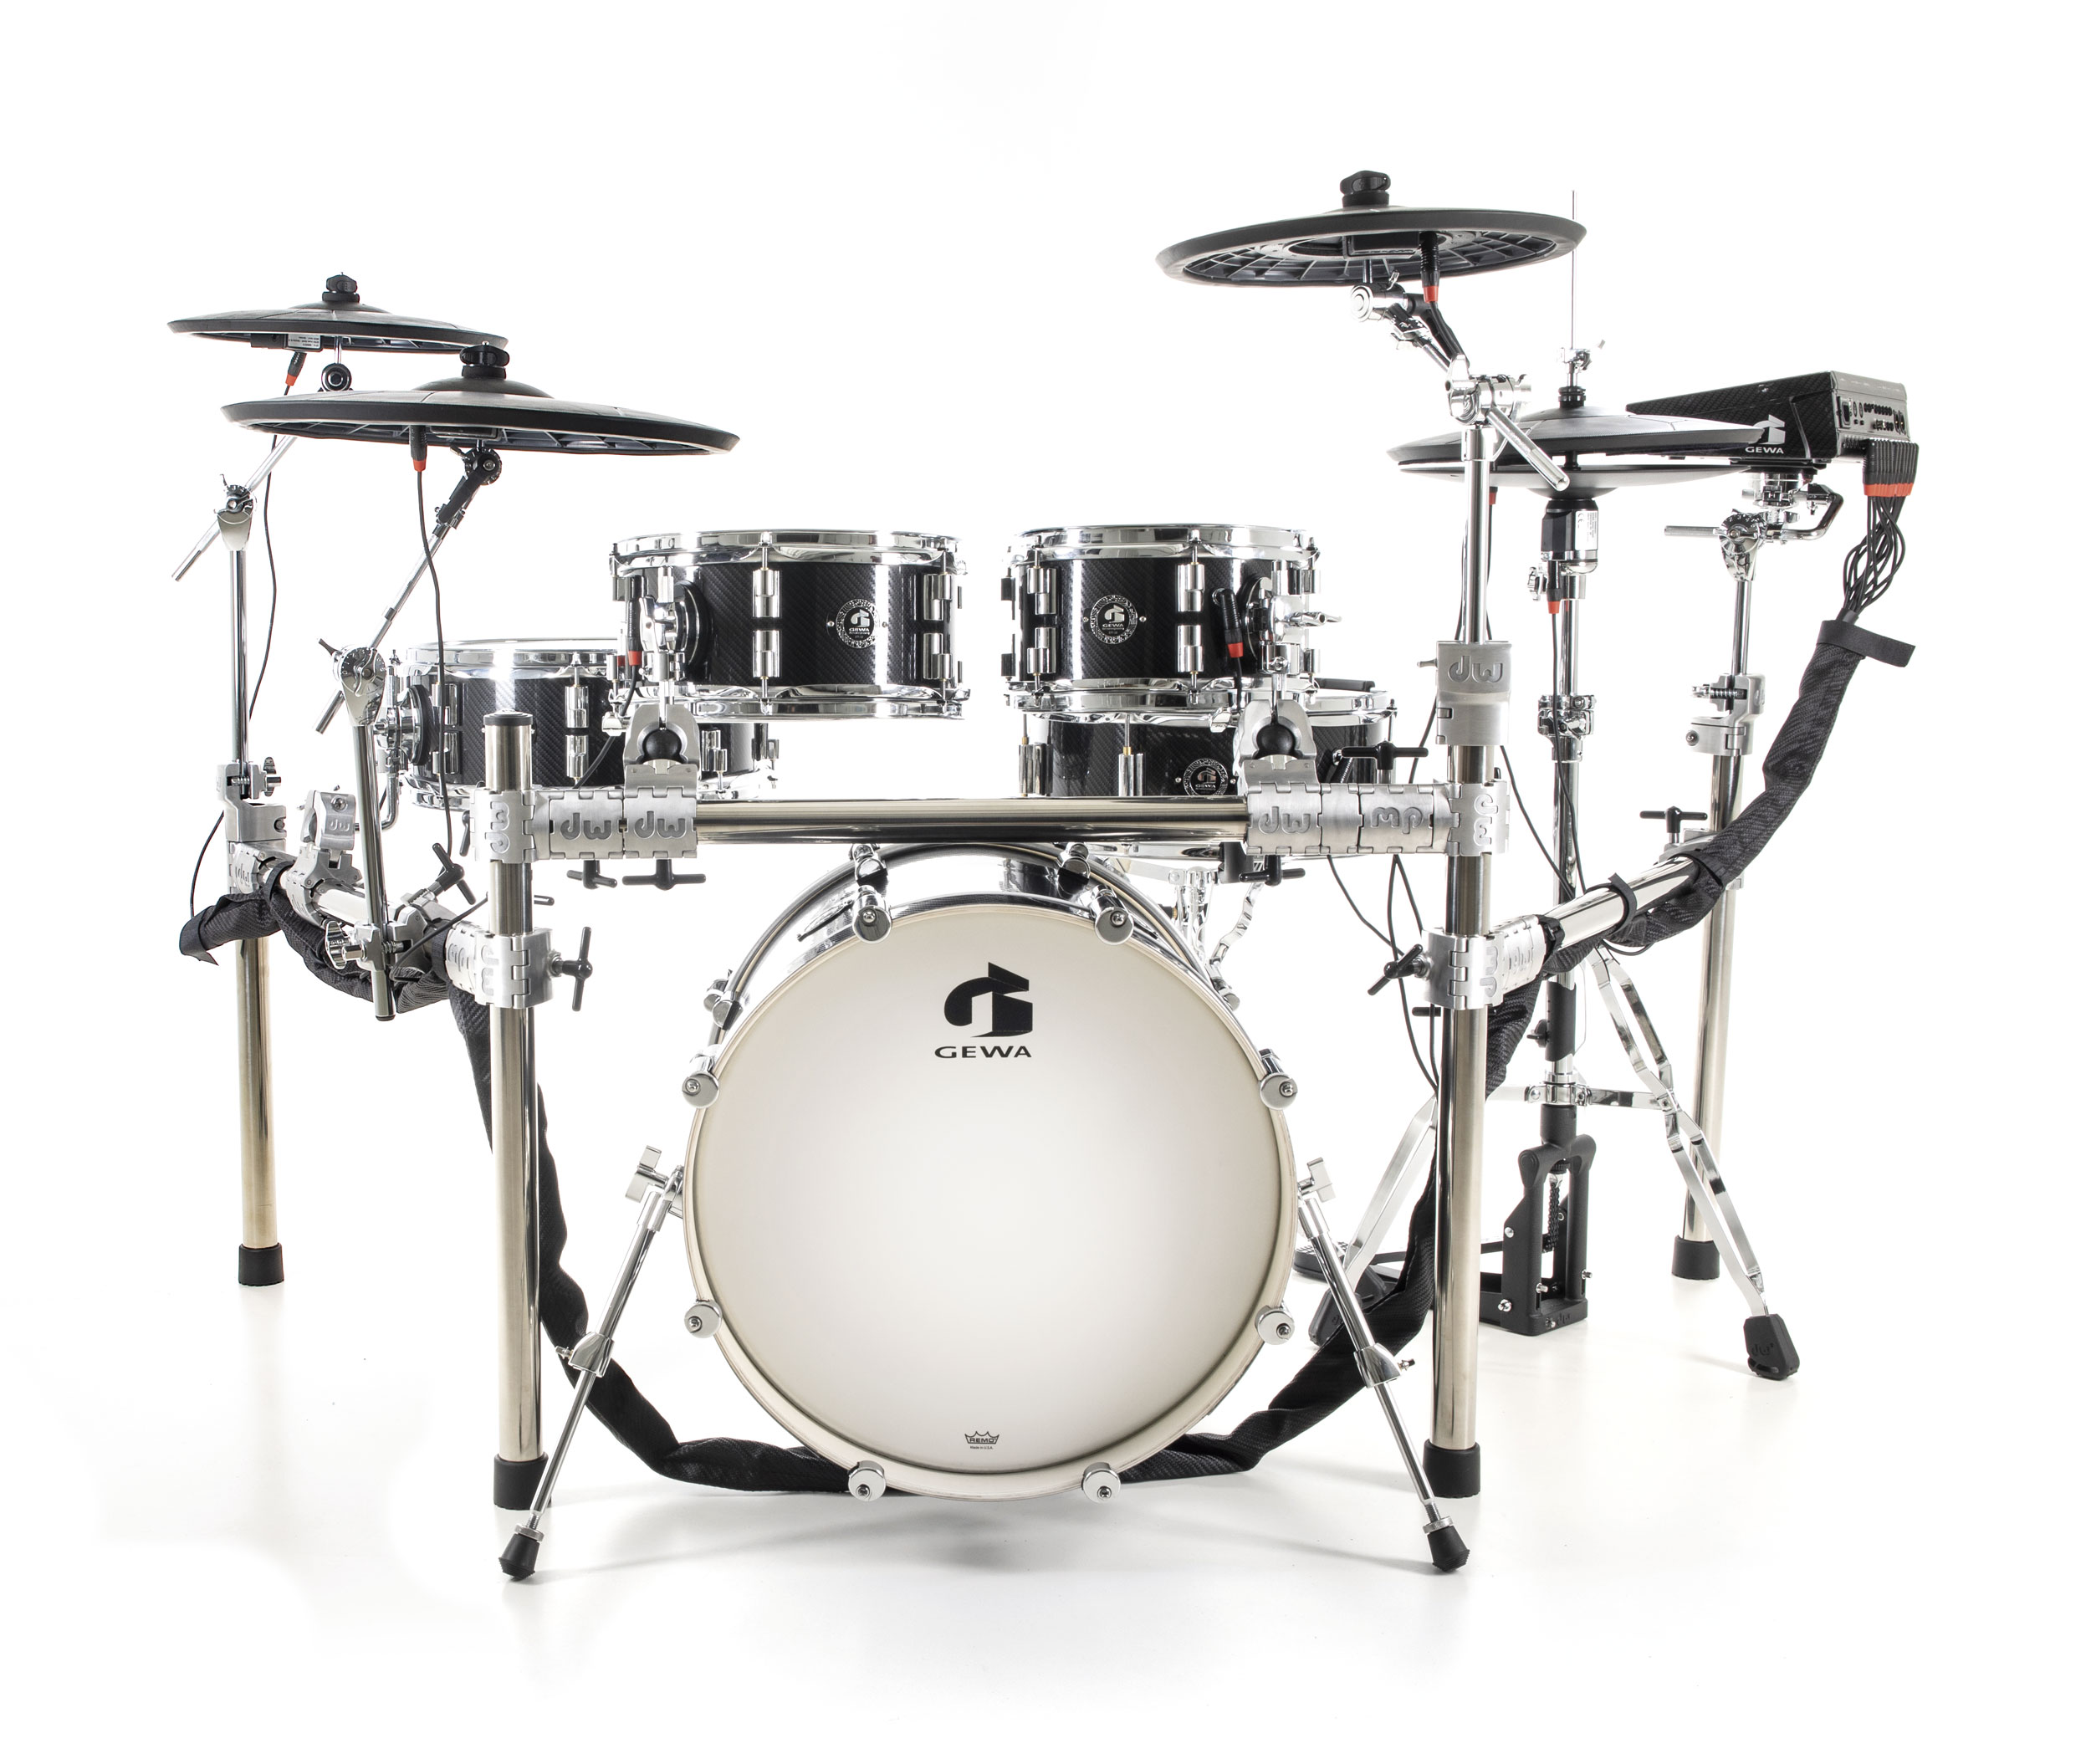 Gewa G9 E-drum Kit Pro C5 Carbon - Electronic drum kit & set - Variation 3